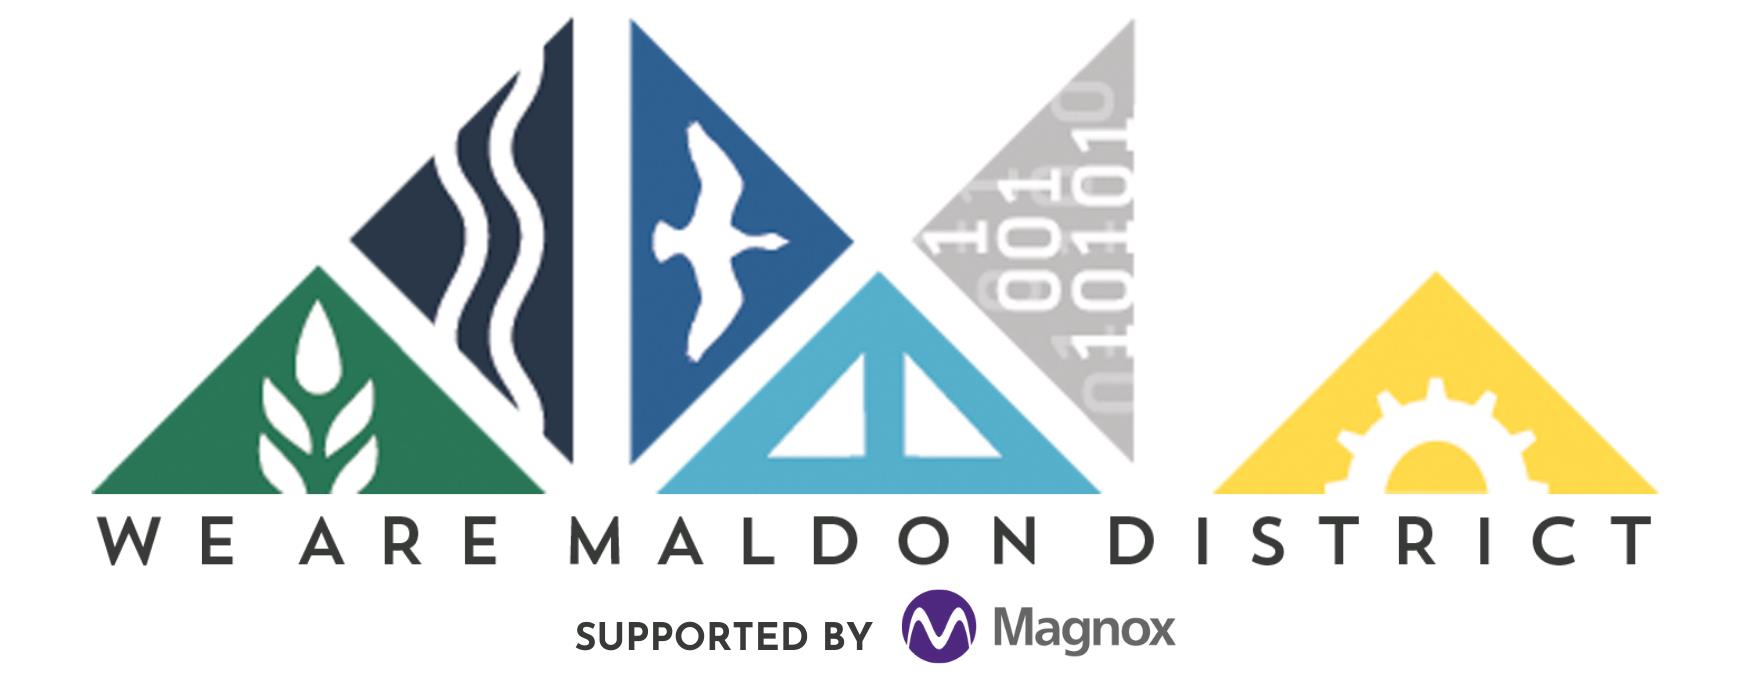 We Are Maldon District logo